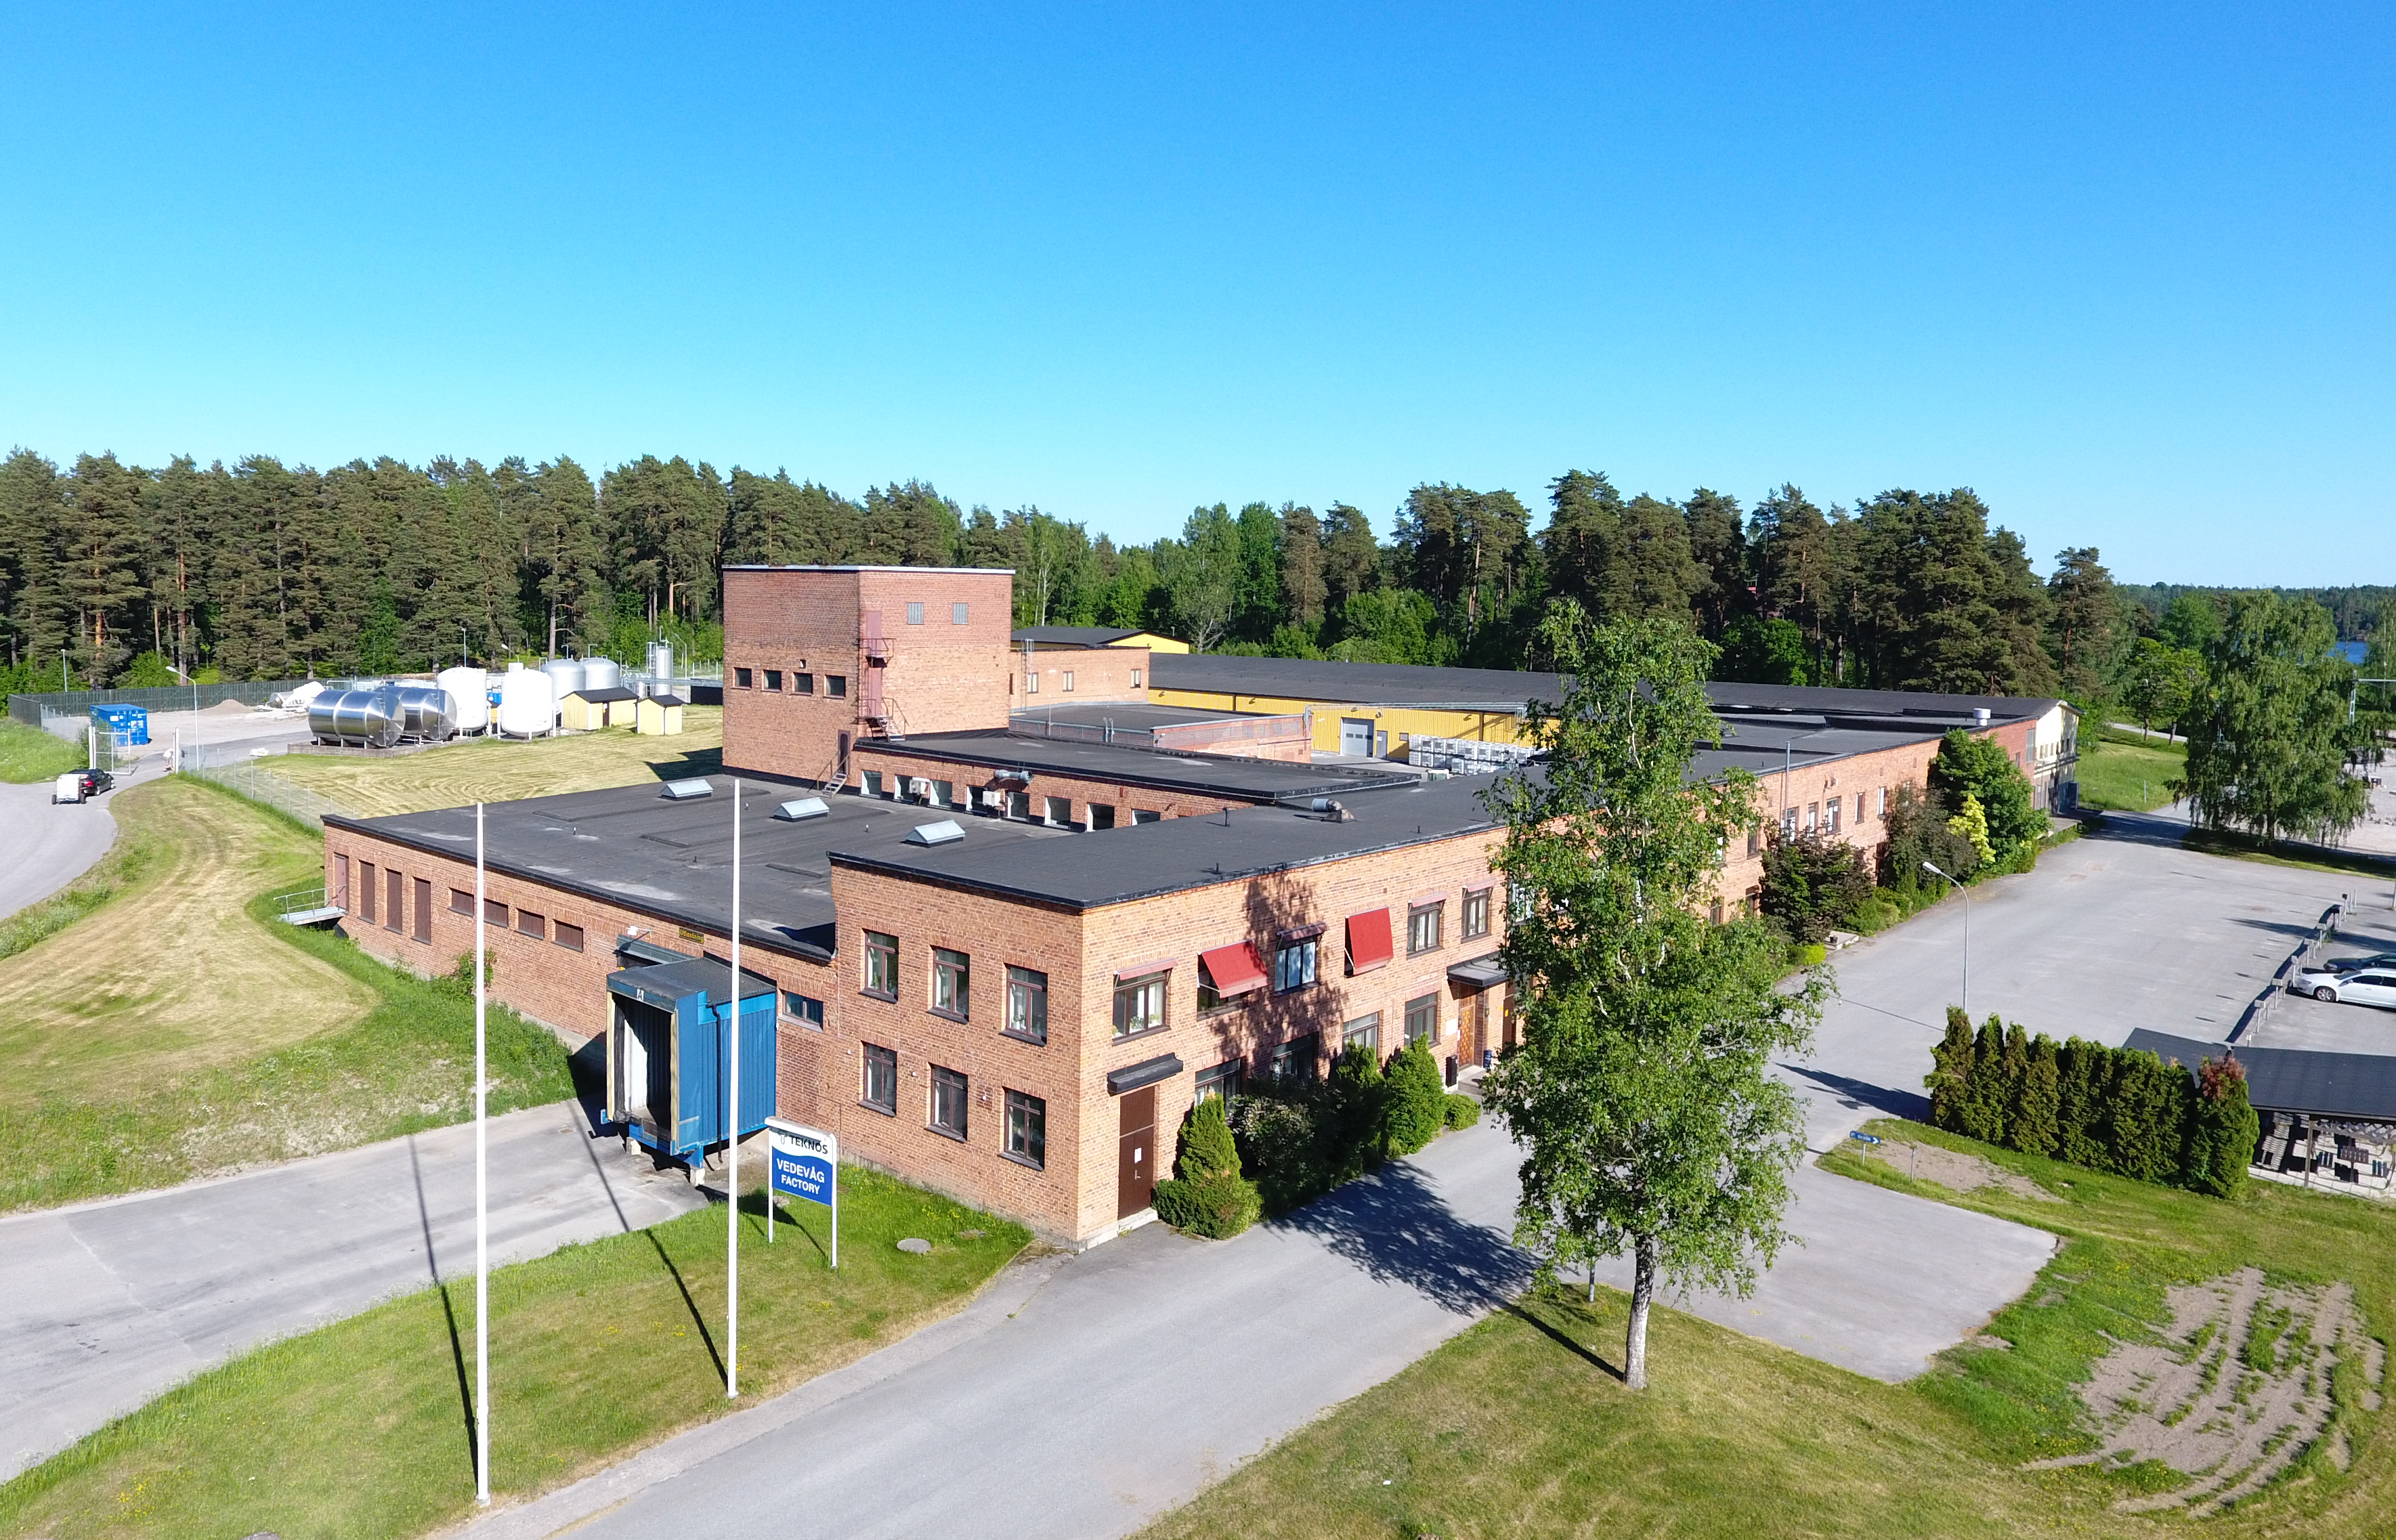 Teknos stärker sitt fokus på försäljning och service i Sverige och flyttar produktionen utanför Sverige